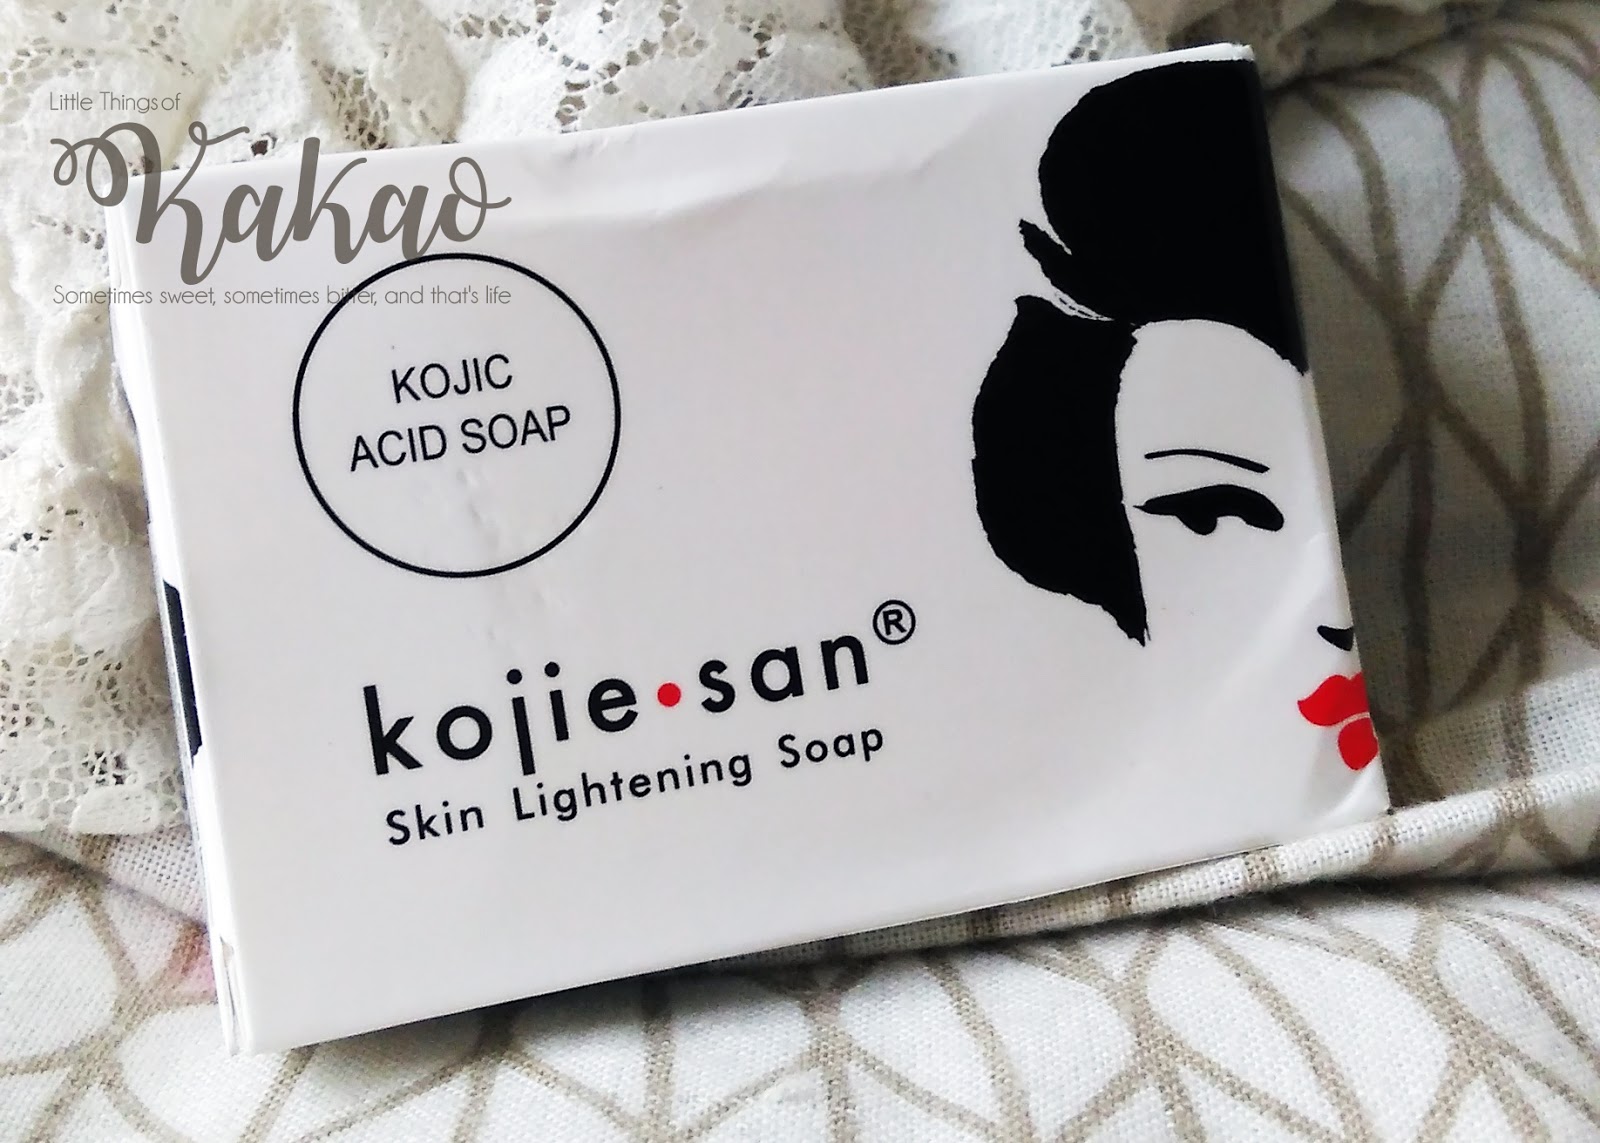 Sabun Kojie San Skin Lightening Soap